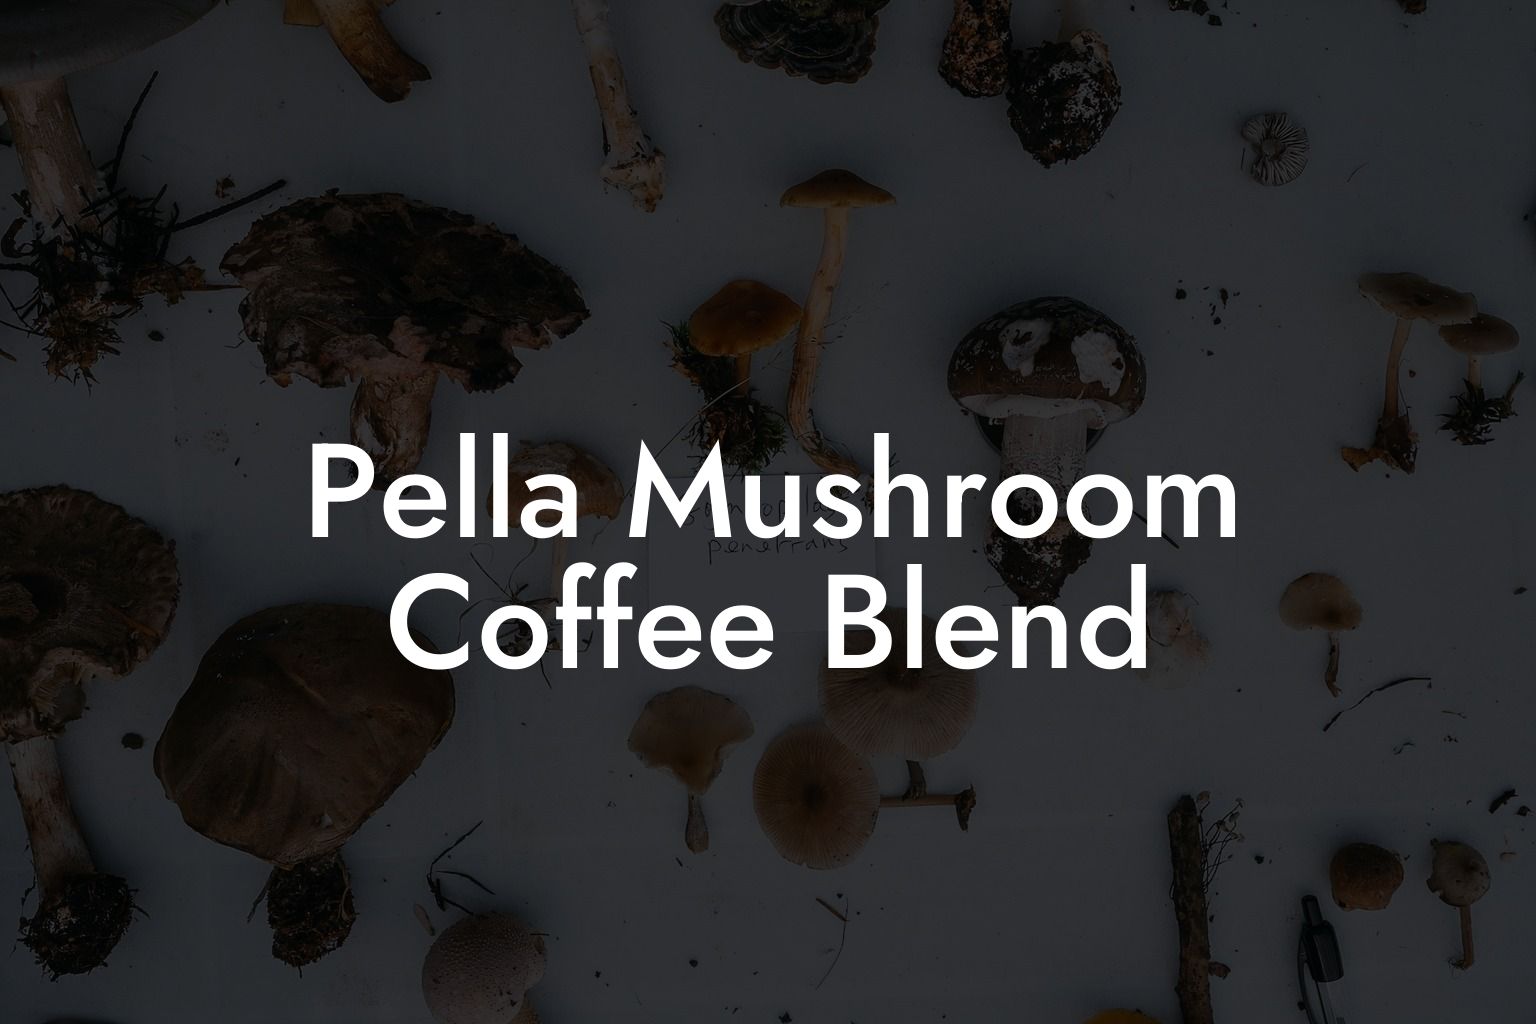 Pella Mushroom Coffee Blend